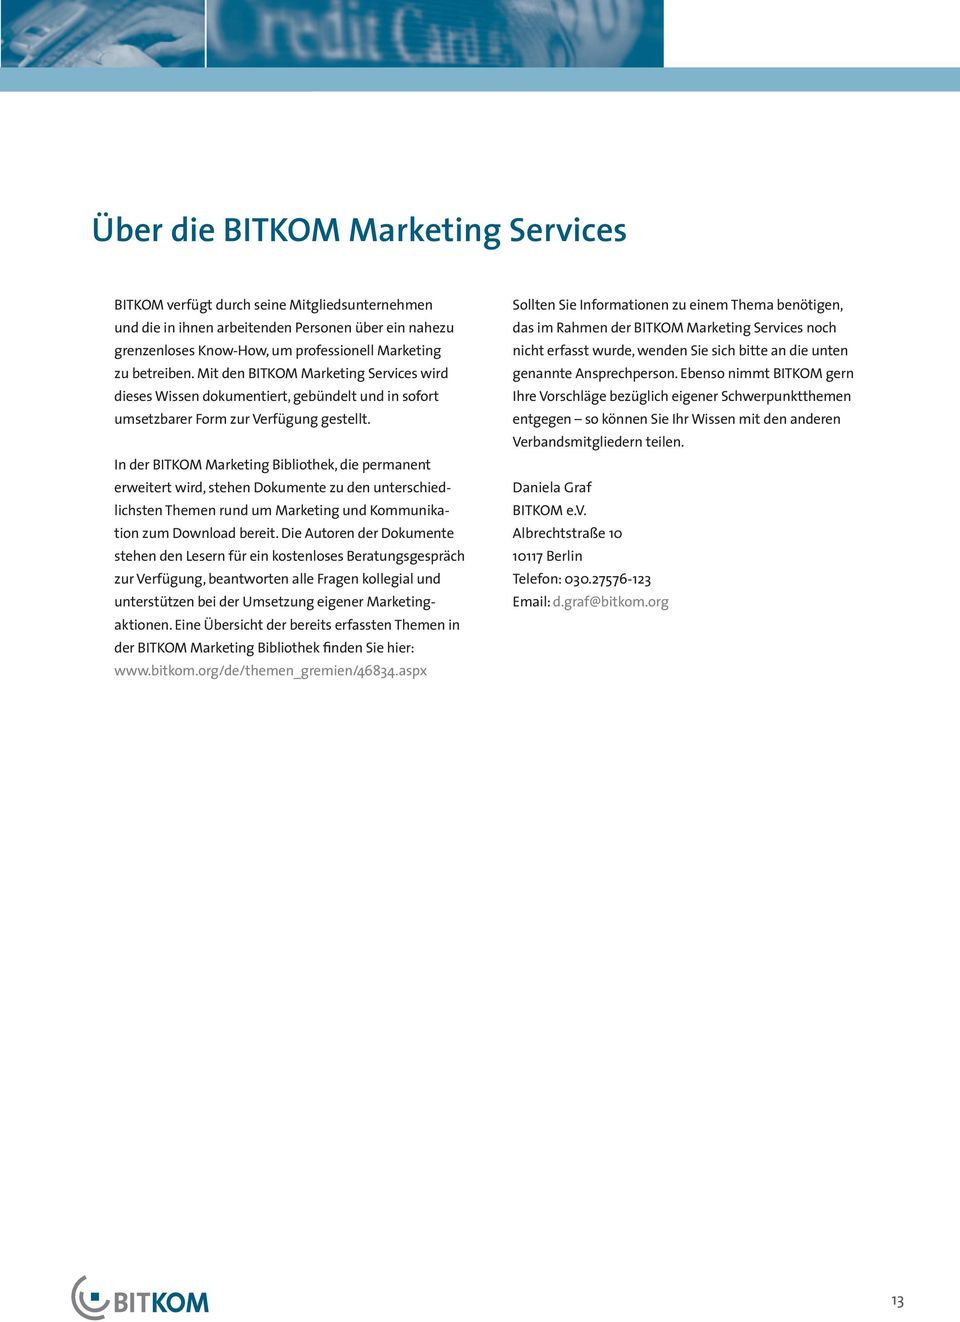 In der BITKOM Marketing Bibliothek, die permanent erweitert wird, stehen Dokumente zu den unterschiedlichsten Themen rund um Marketing und Kommunikation zum Download bereit.